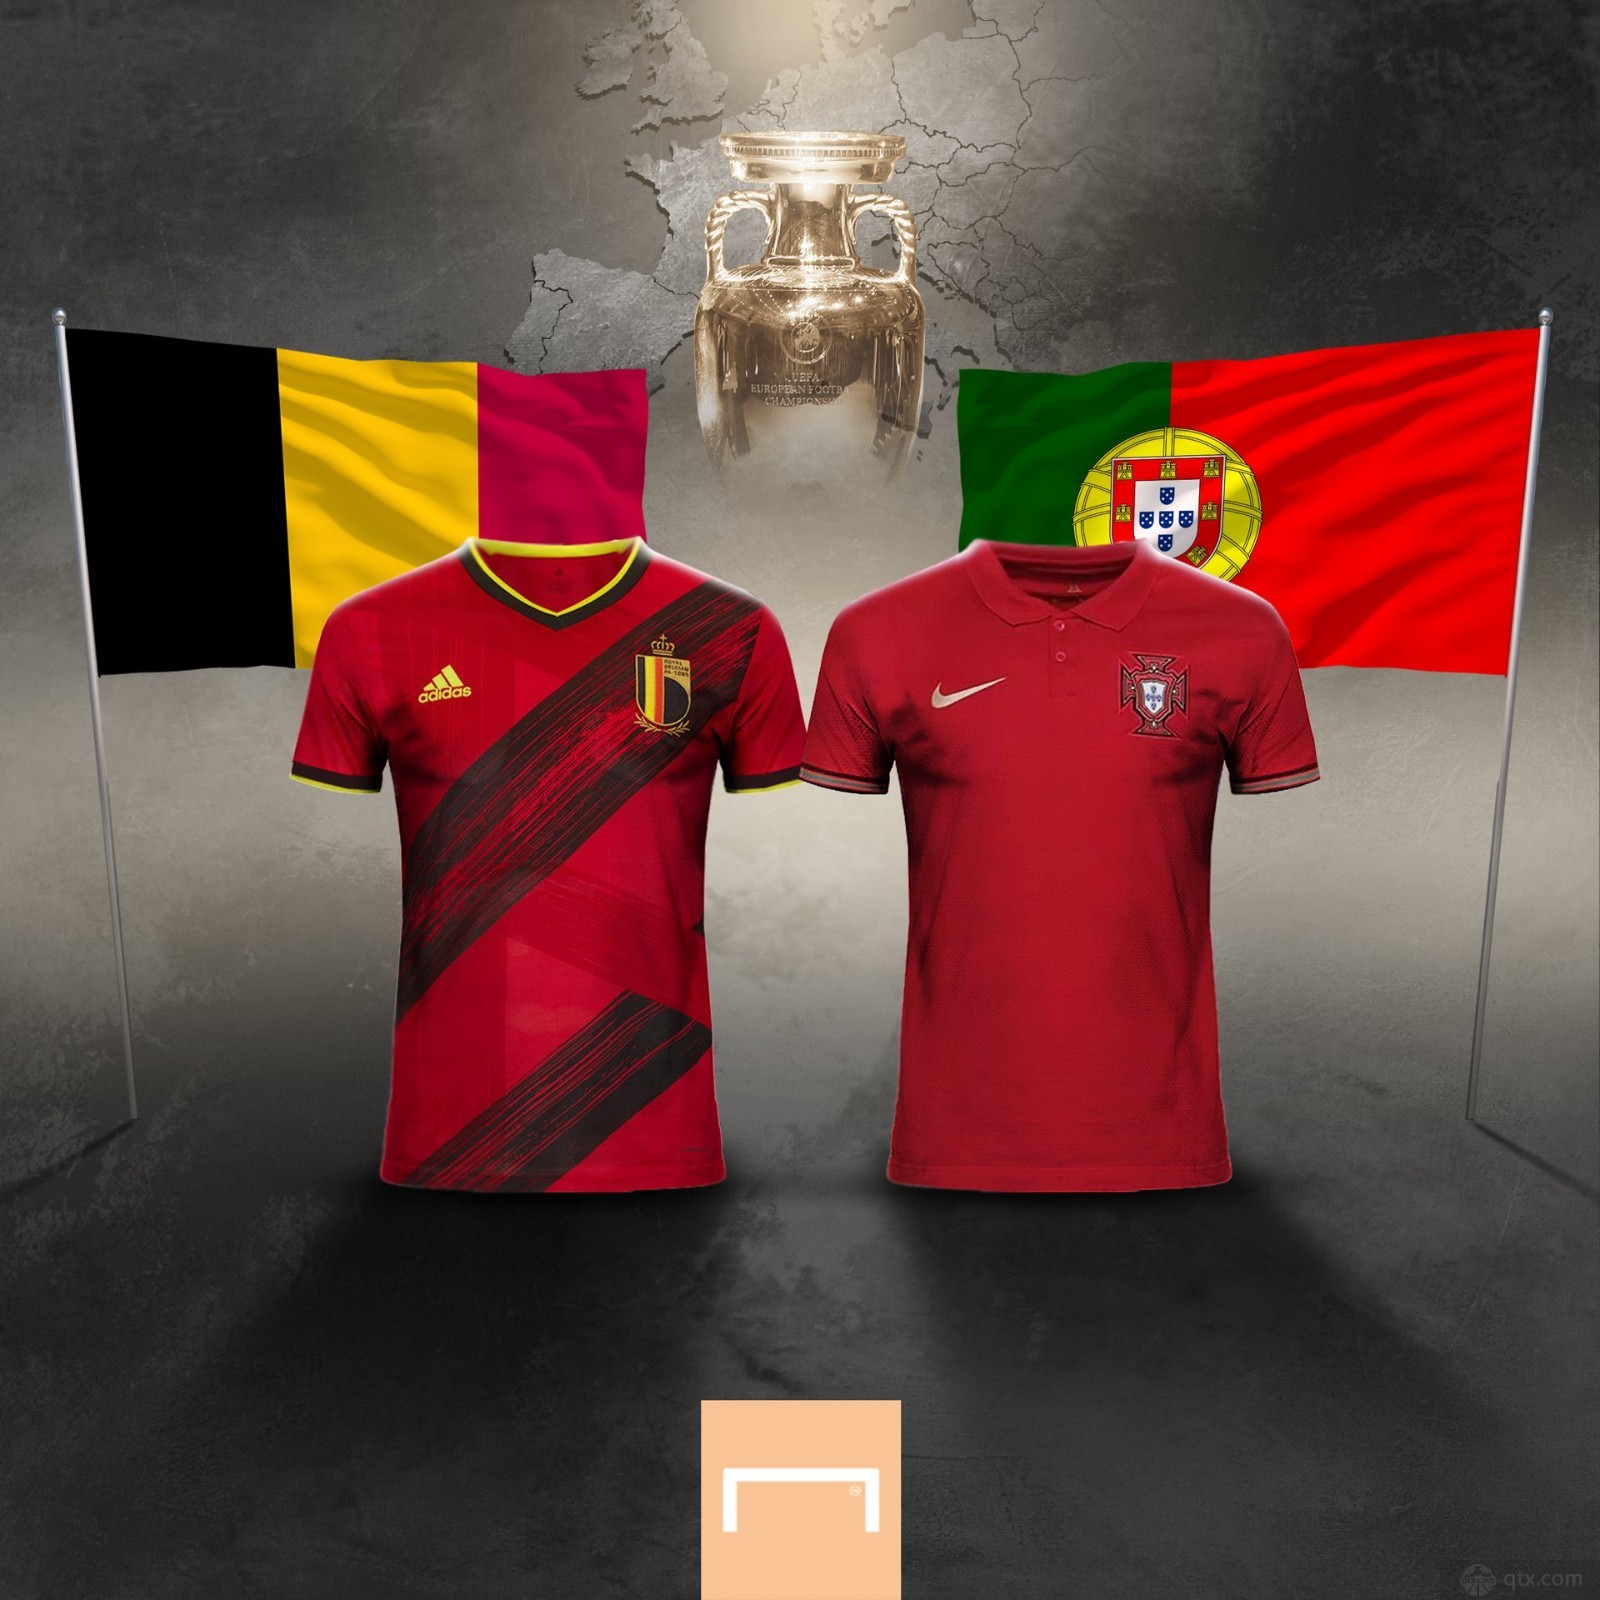 包含比利时vs葡萄牙谁赢的词条